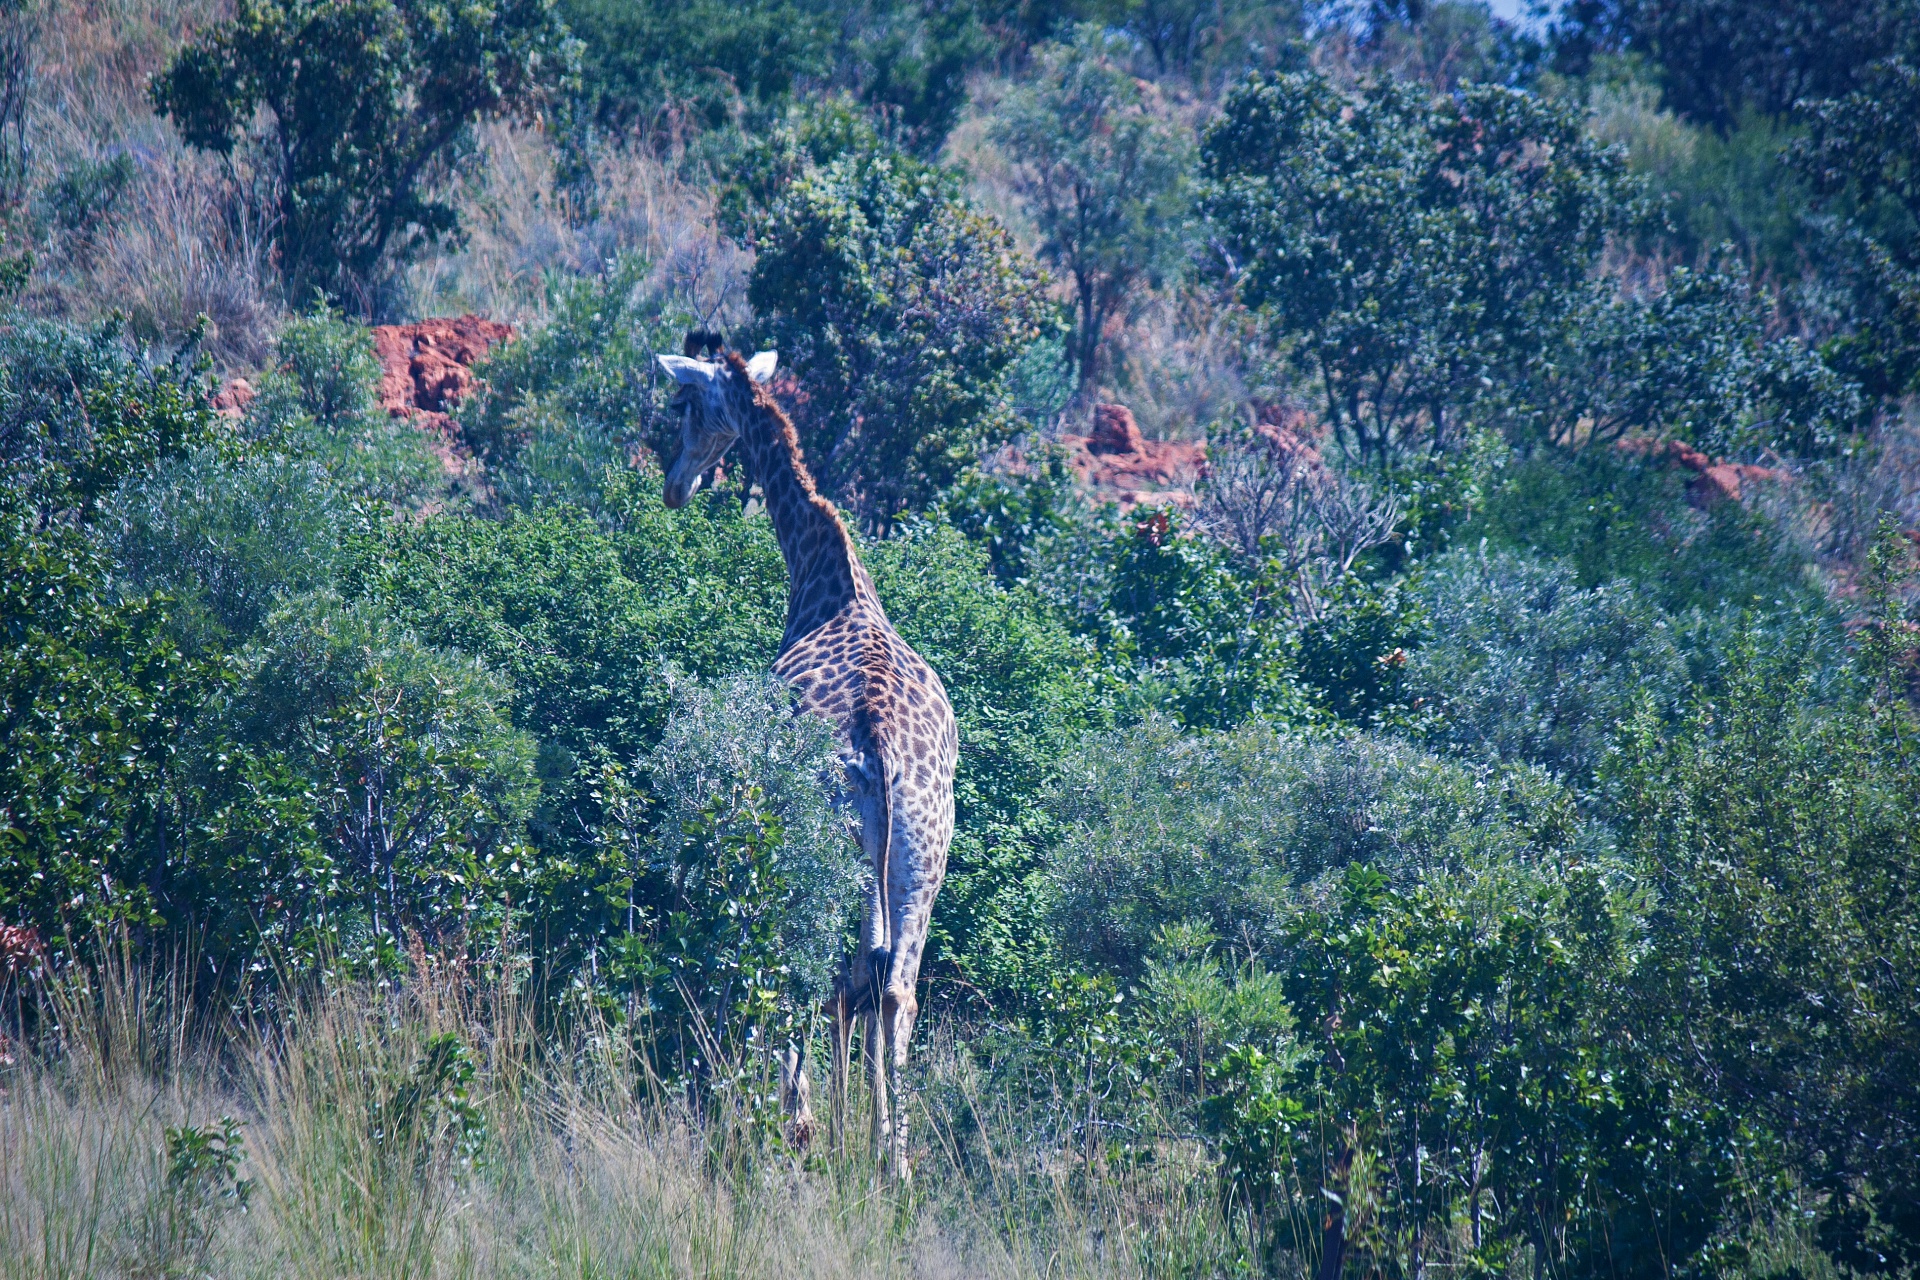 Hoge giraf van achteren in Afrika